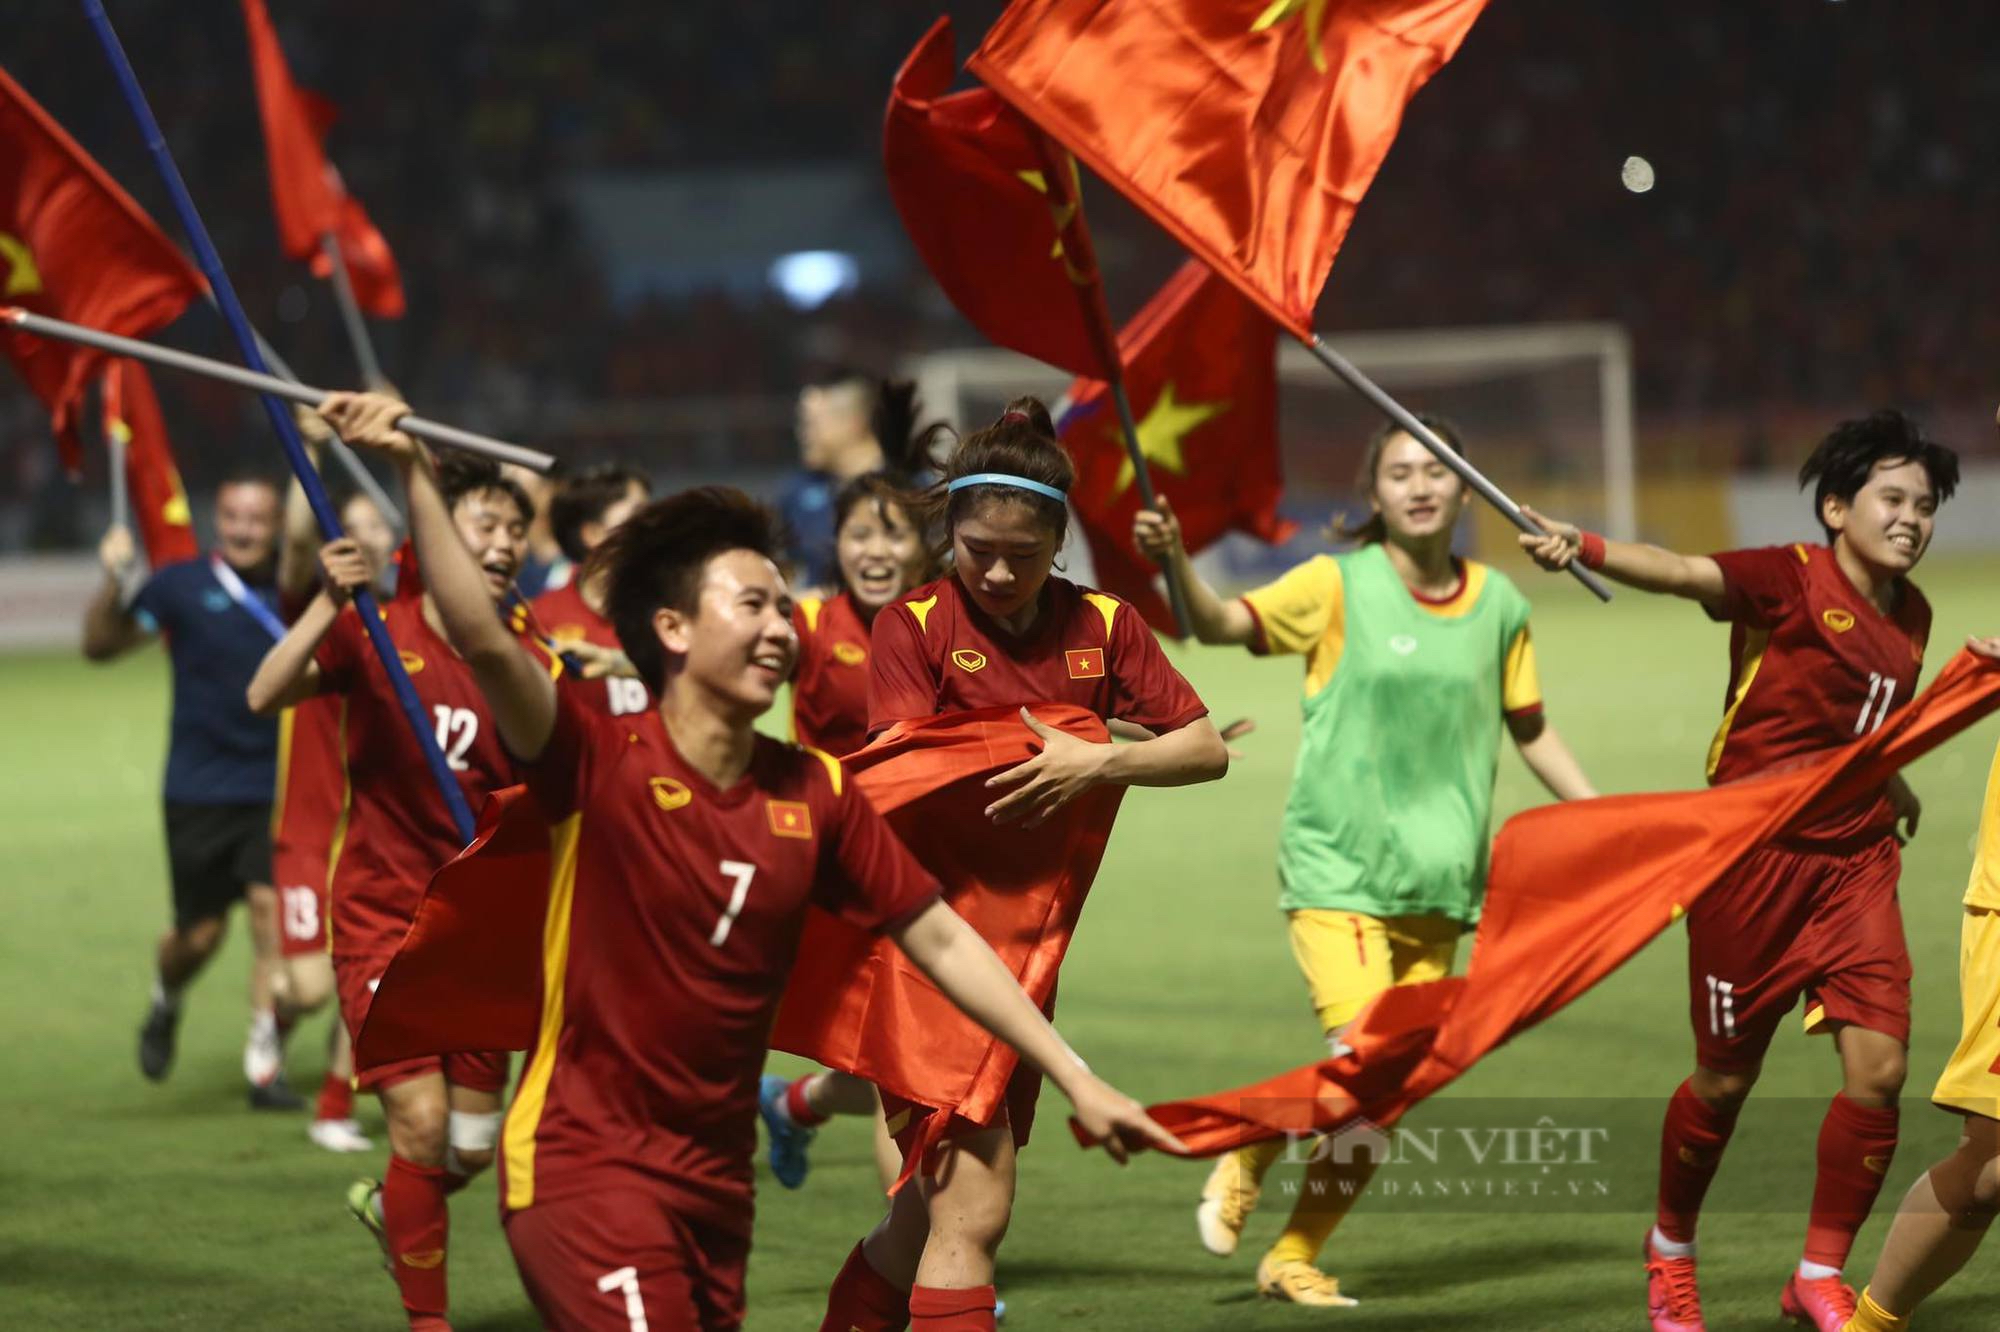 Đội tuyển bóng đá nữ Việt Nam: Đội tuyển bóng đá nữ Việt Nam đang gây sốt trong làng bóng đá nữ thế giới. Với nhiều tài năng trẻ và kinh nghiệm đáng kinh ngạc, đội tuyển Việt Nam đang là niềm hy vọng vô địch của đất nước. Cơ hội để chứng kiến tài năng và sự quyết tâm của đội tuyển bóng đá nữ Việt Nam là một trải nghiệm khó quên cho người hâm mộ.